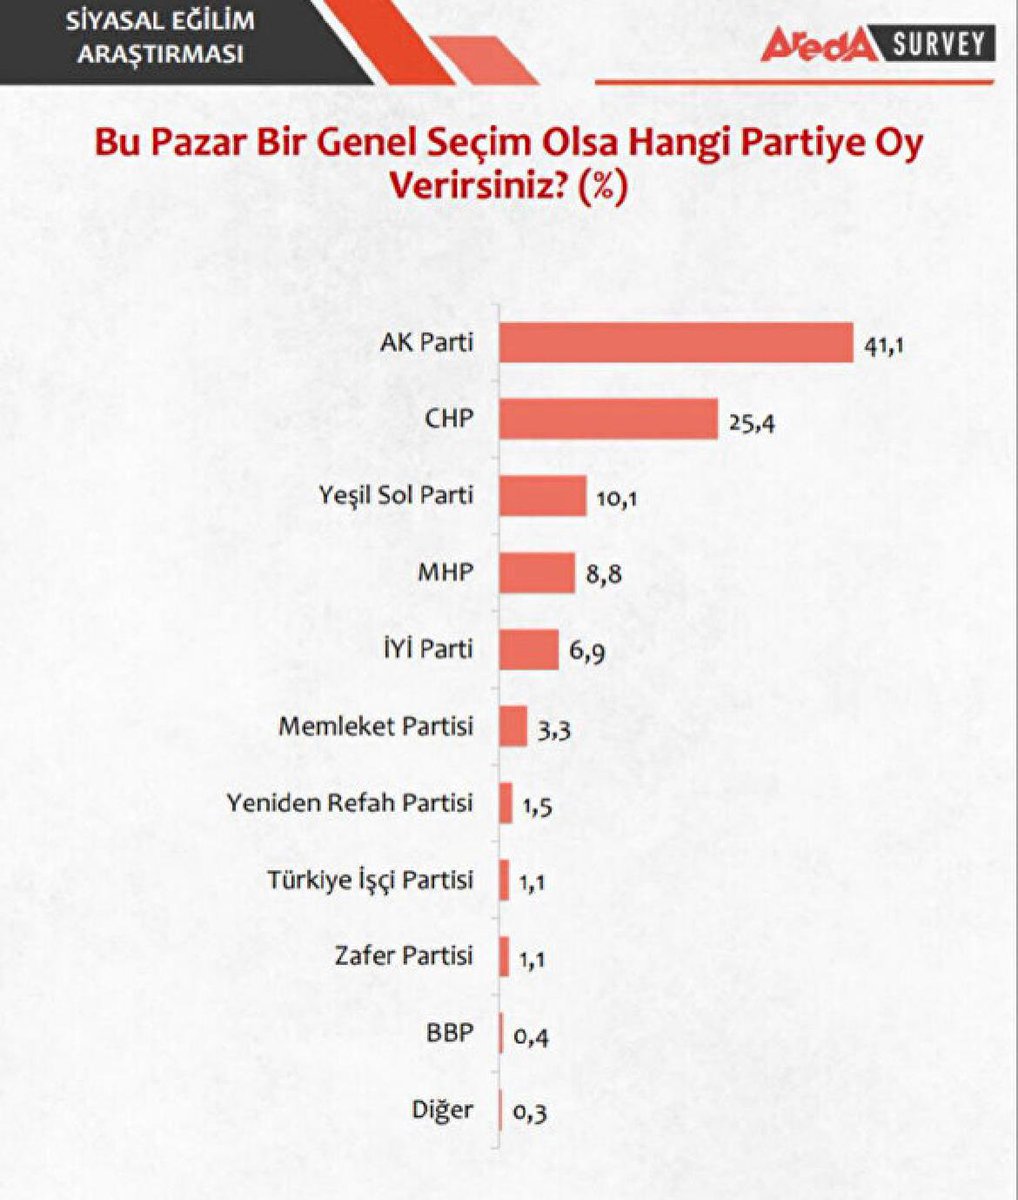 Arada Survey’in 15-20 Nisan arasında yaptığı 2023 Cumhurbaşkanlığı Seçim Anketi 1. Tur

Recep Tayyip Erdoğan: %51,4
Kemal Kılıçdaroğlu: %41,8
Muharrem İnce: %4,6
Sinan Oğan: %2,2

Bu Pazar Bir Genel Seçim Olsa Oyunuzu Hangi Partiye Verirsiniz ?  

AK Parti: %41,1
CHP: %25,4
Yeşil